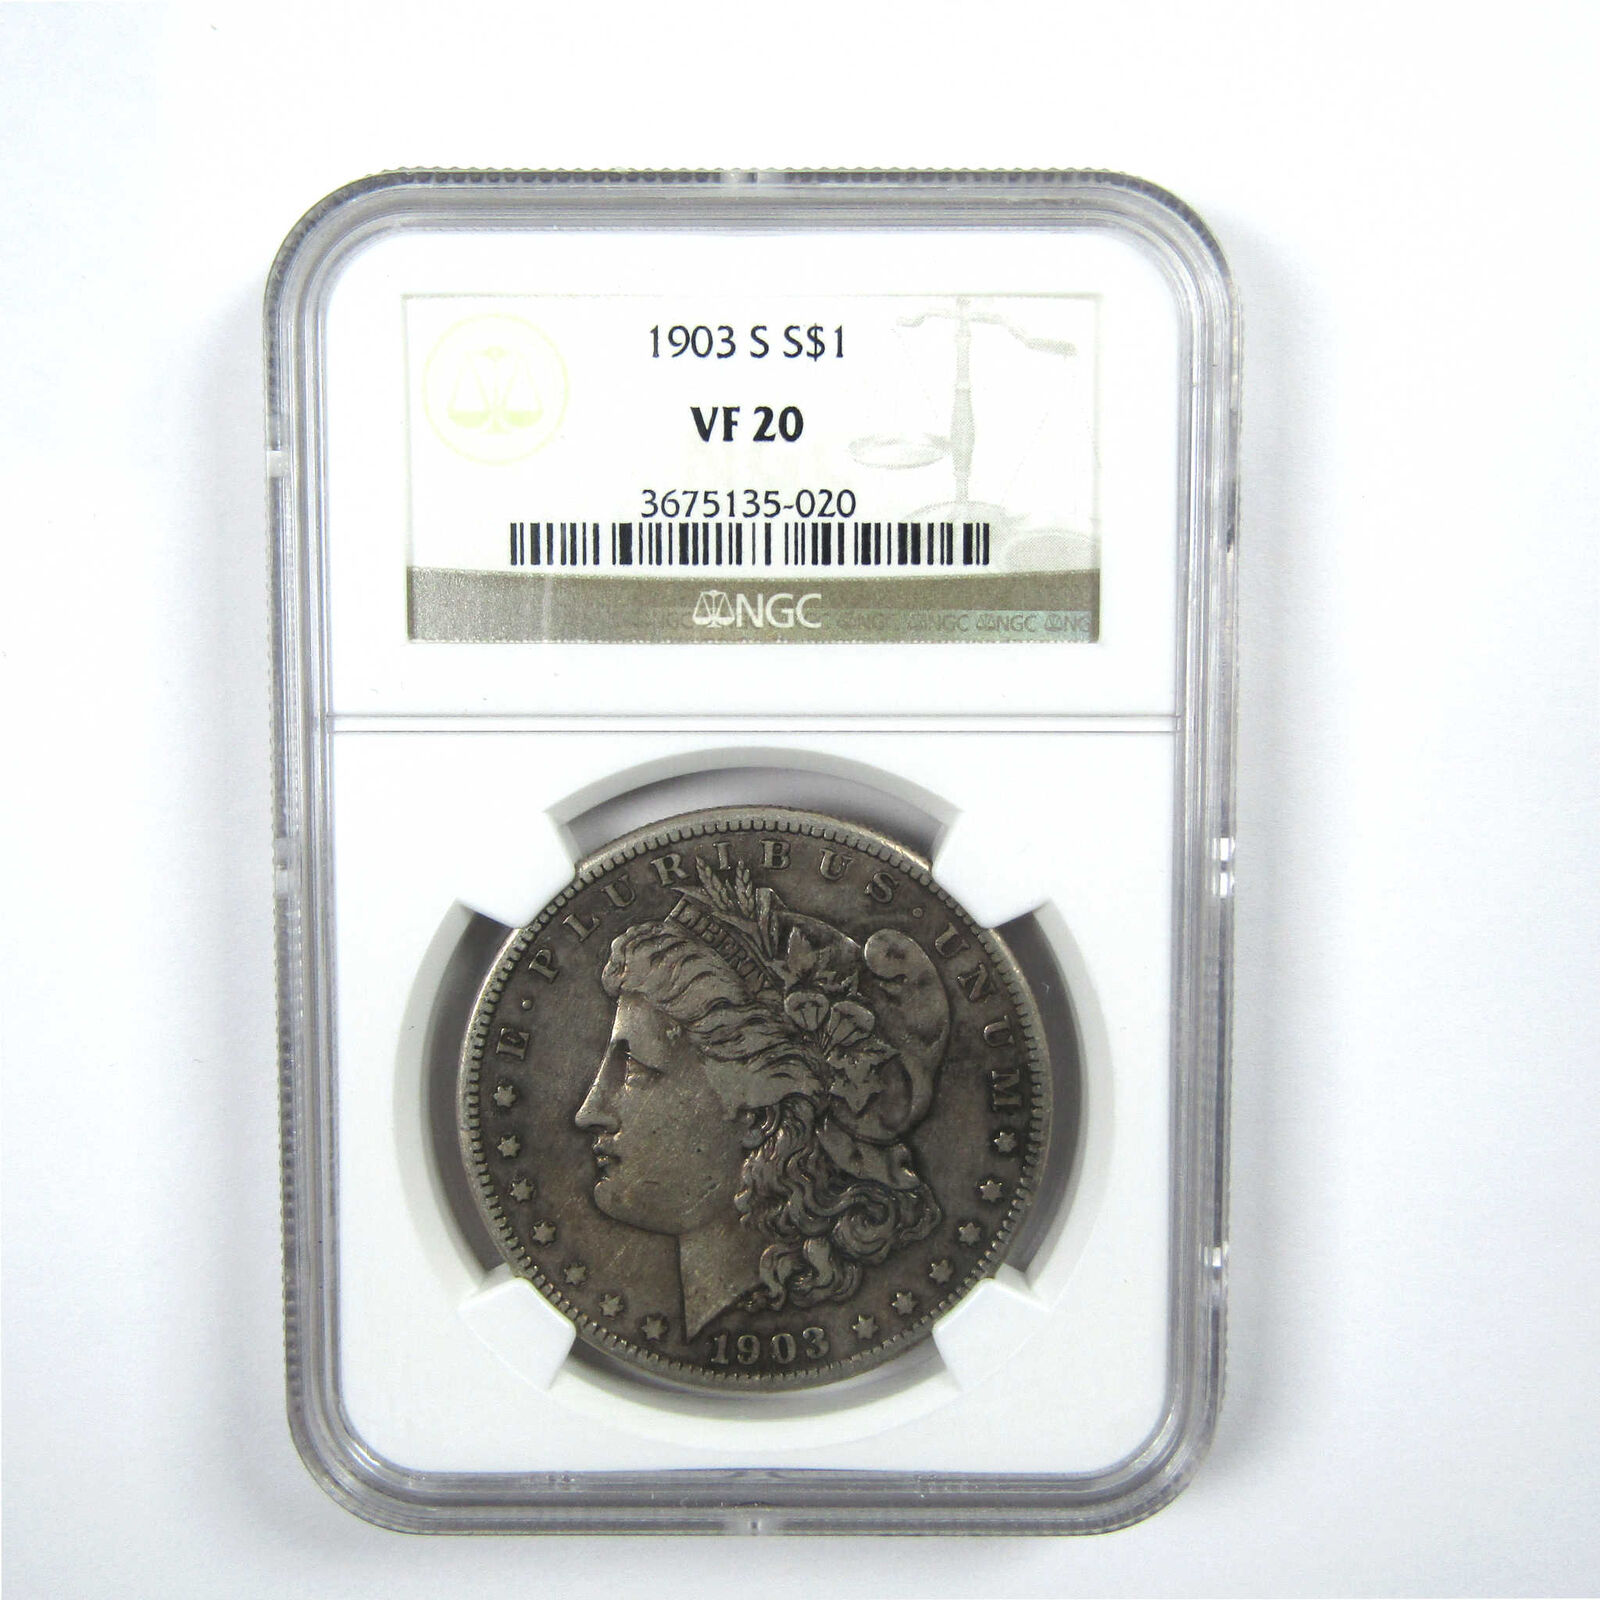 1903 S Morgan Dollar VF 20 NGC Silver $1 Coin SKU:I13764